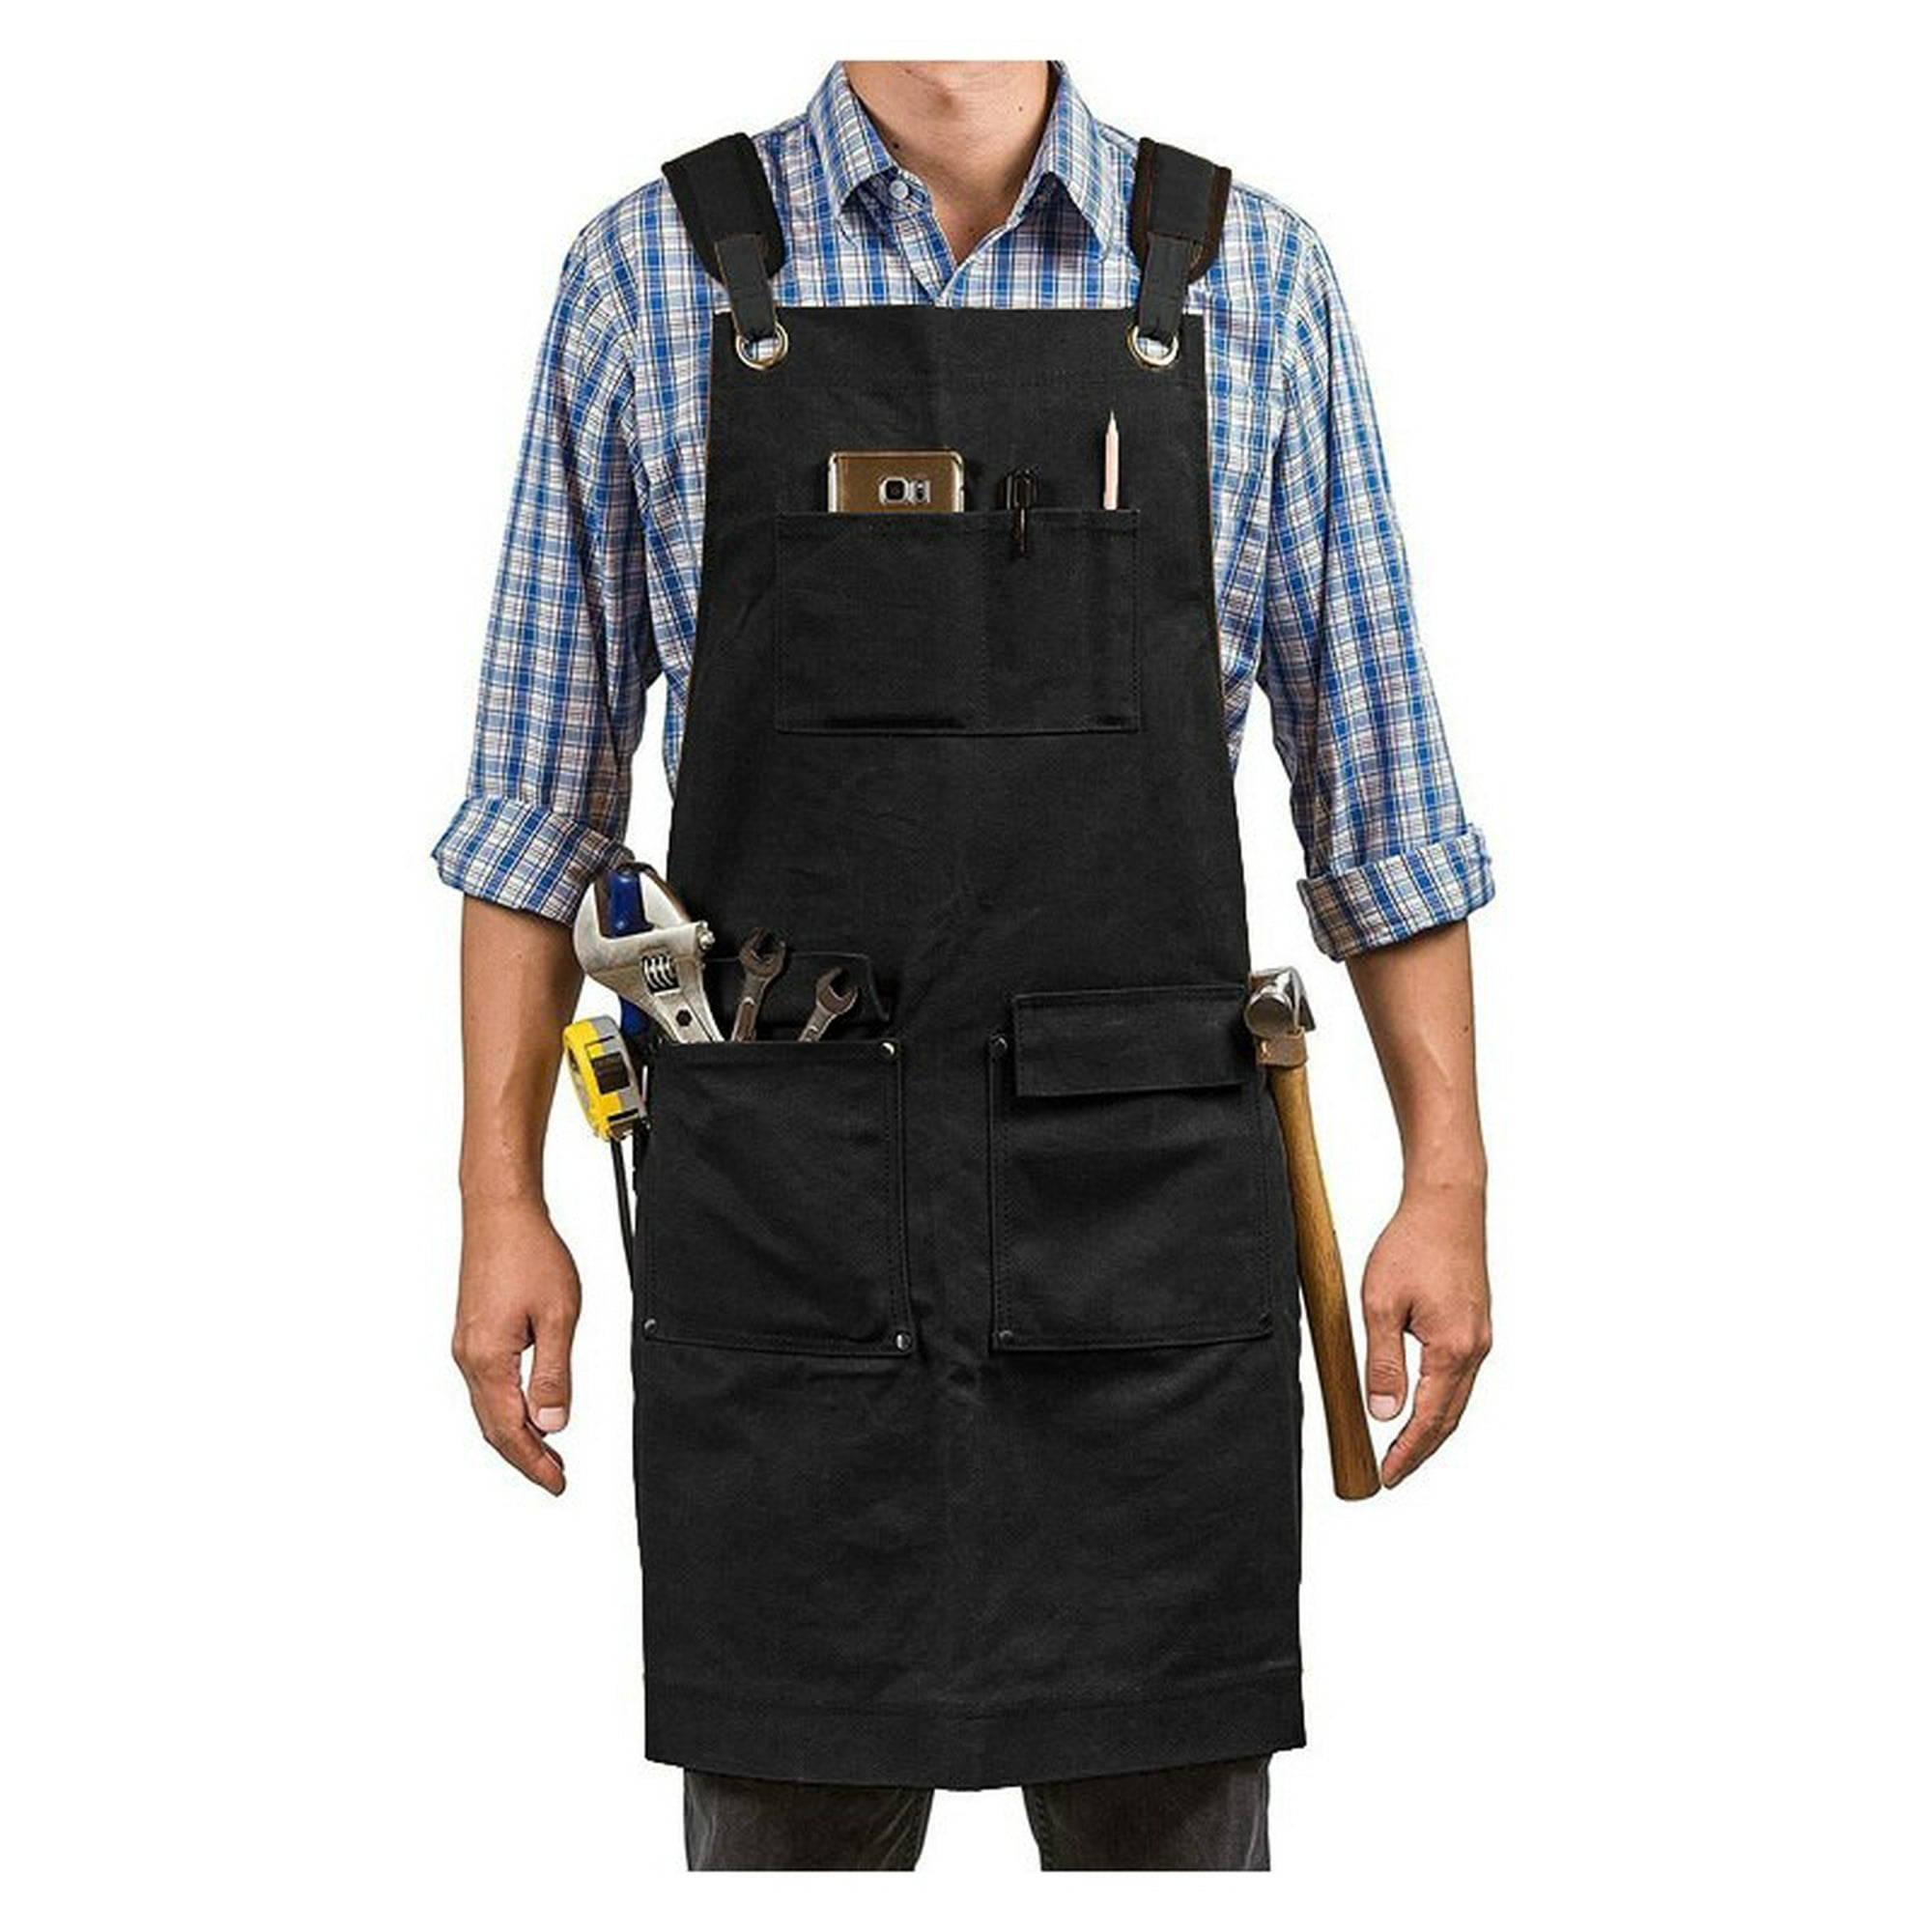 Delantal de trabajo unisex para hombre, de lona, color negro, con bolsillos  para herramientas (color: amarillo claro, tamaño: 1 unid.)